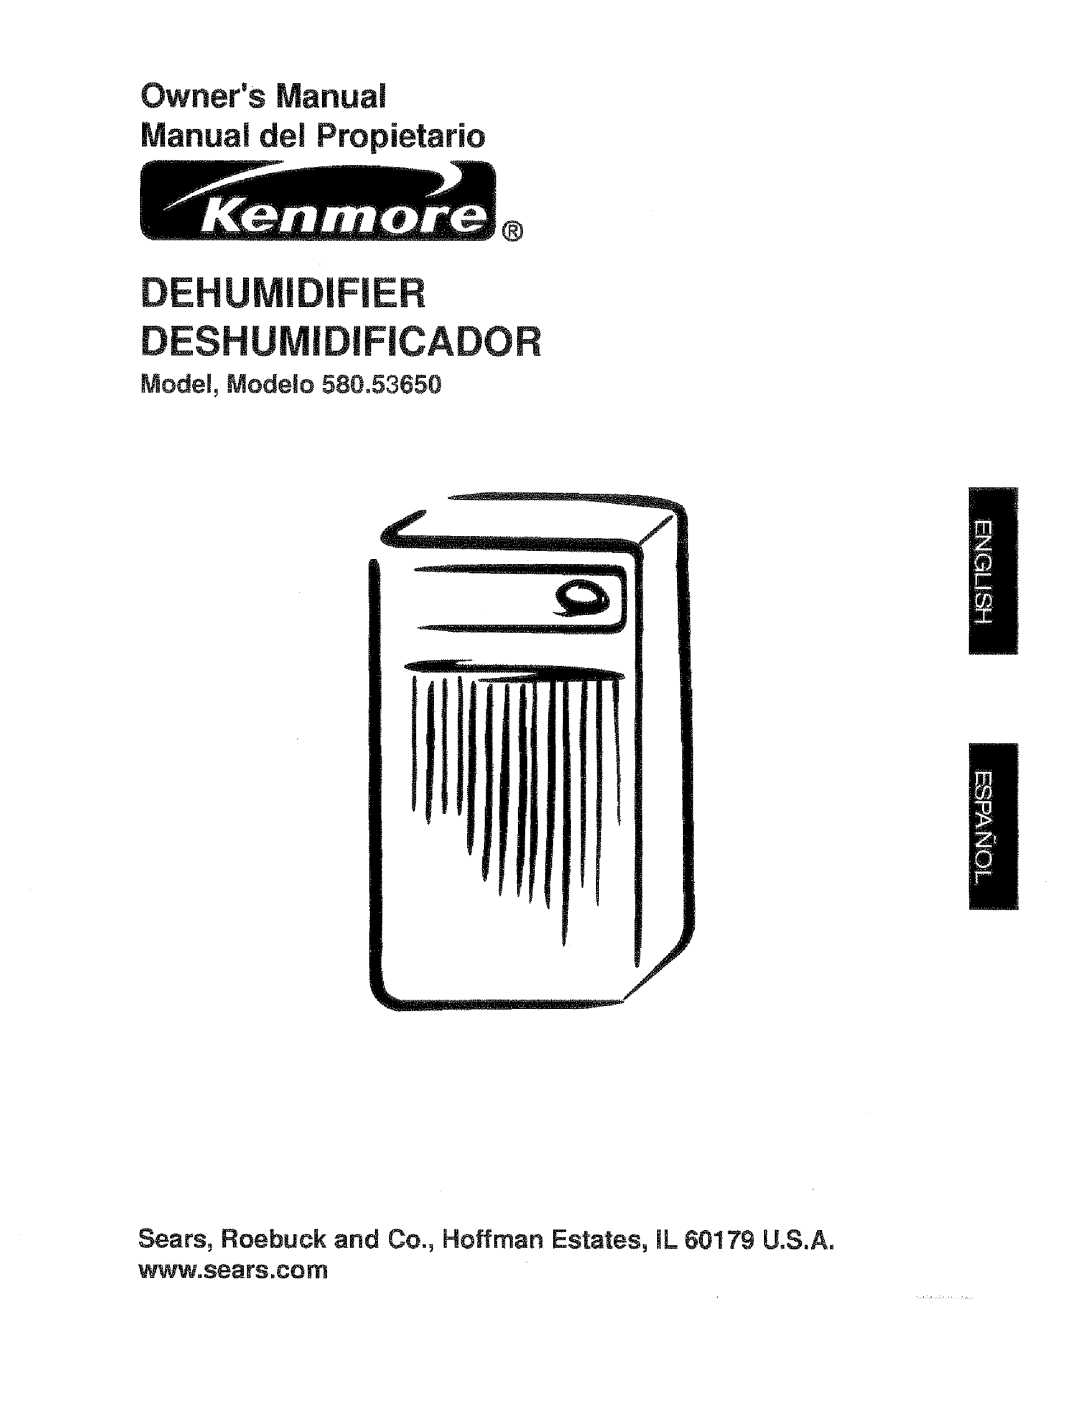 Kenmore 580.53650 owner manual Model, Modelo, Dehumidifier, De Ador, OwnersManual Manual del Propietario 